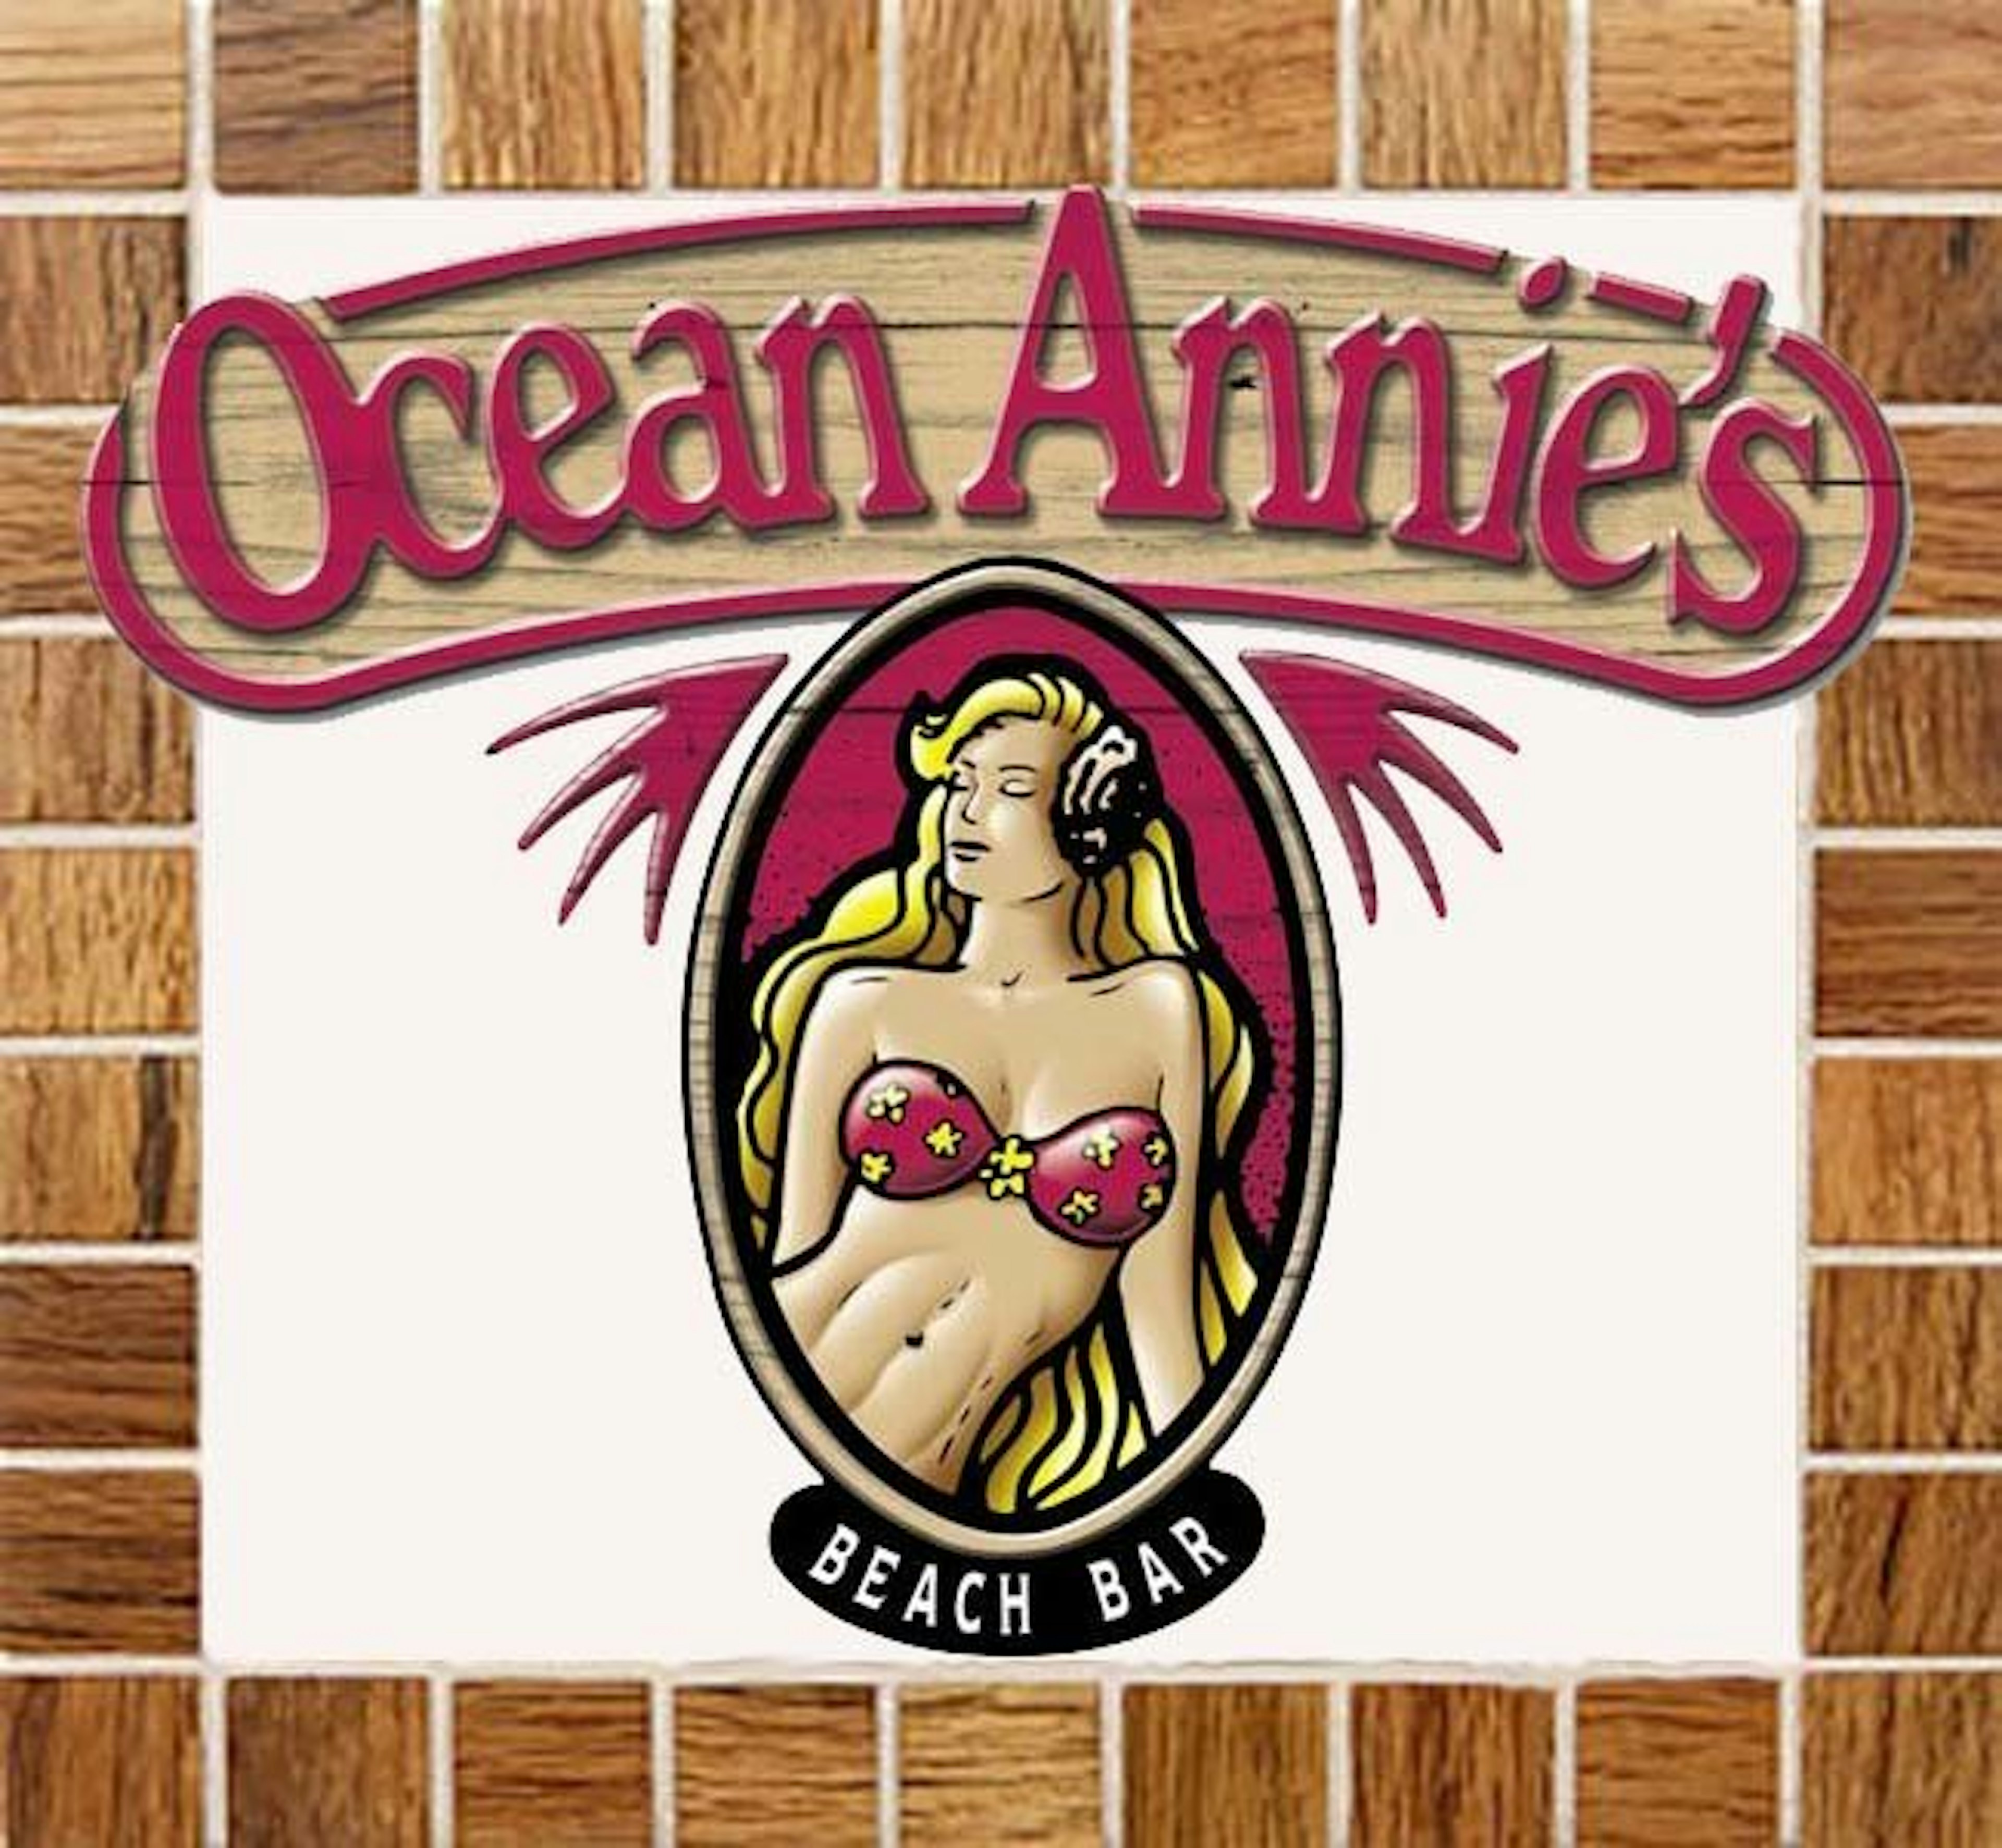 Ocean Annie's